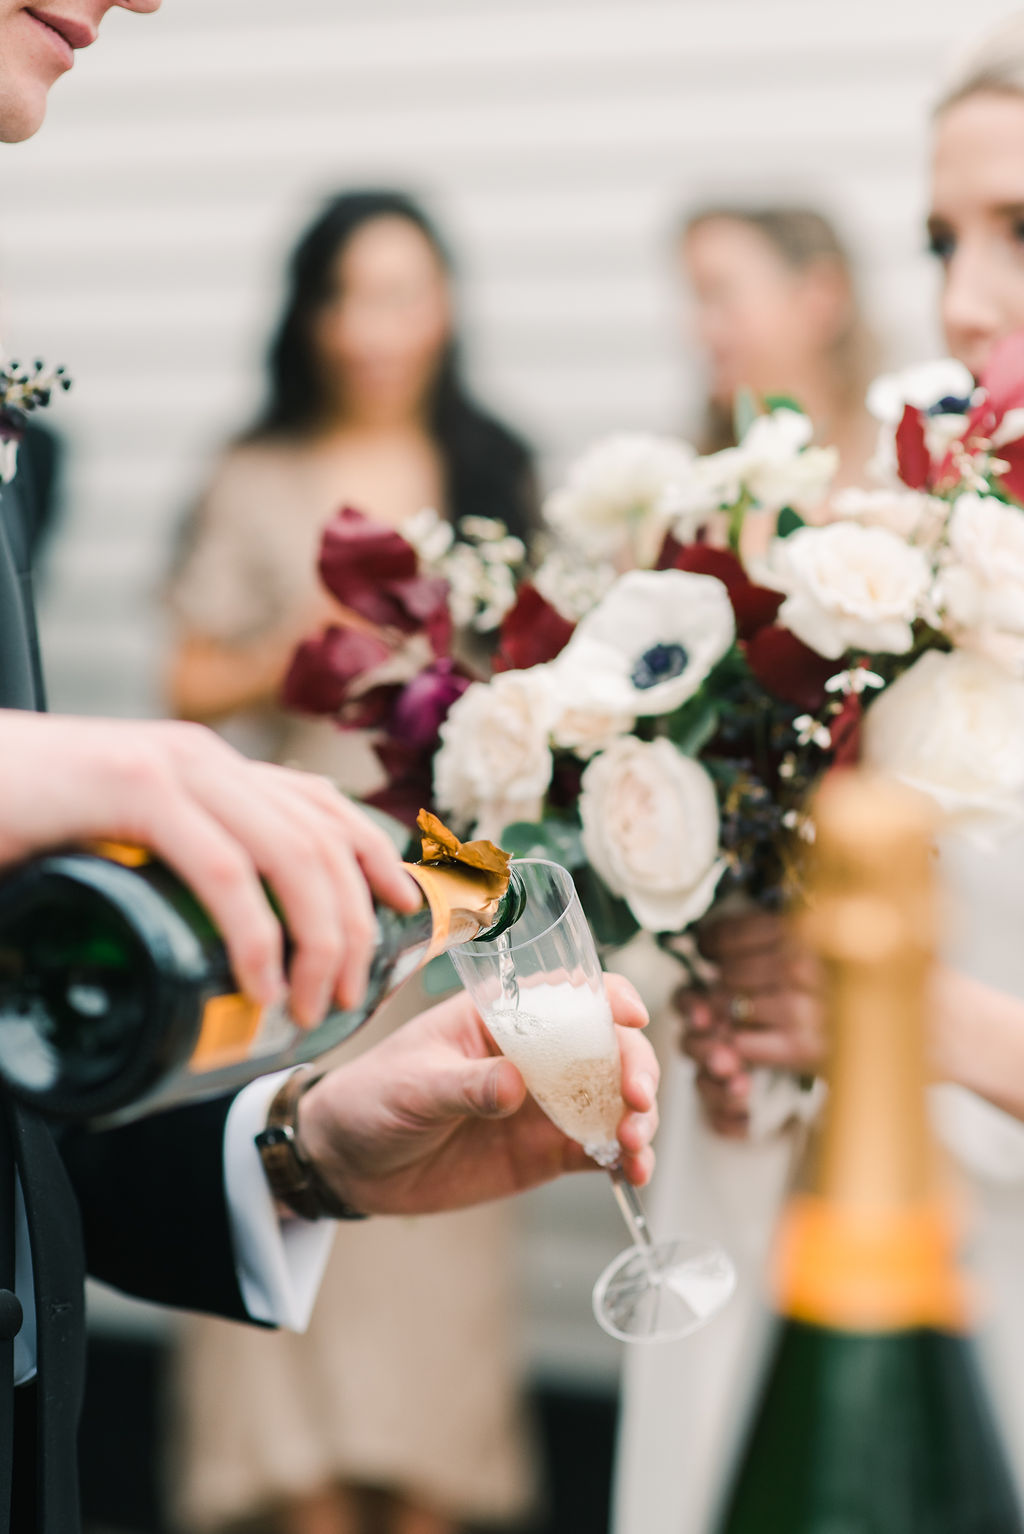 Top 12 Wedding Features of 2021